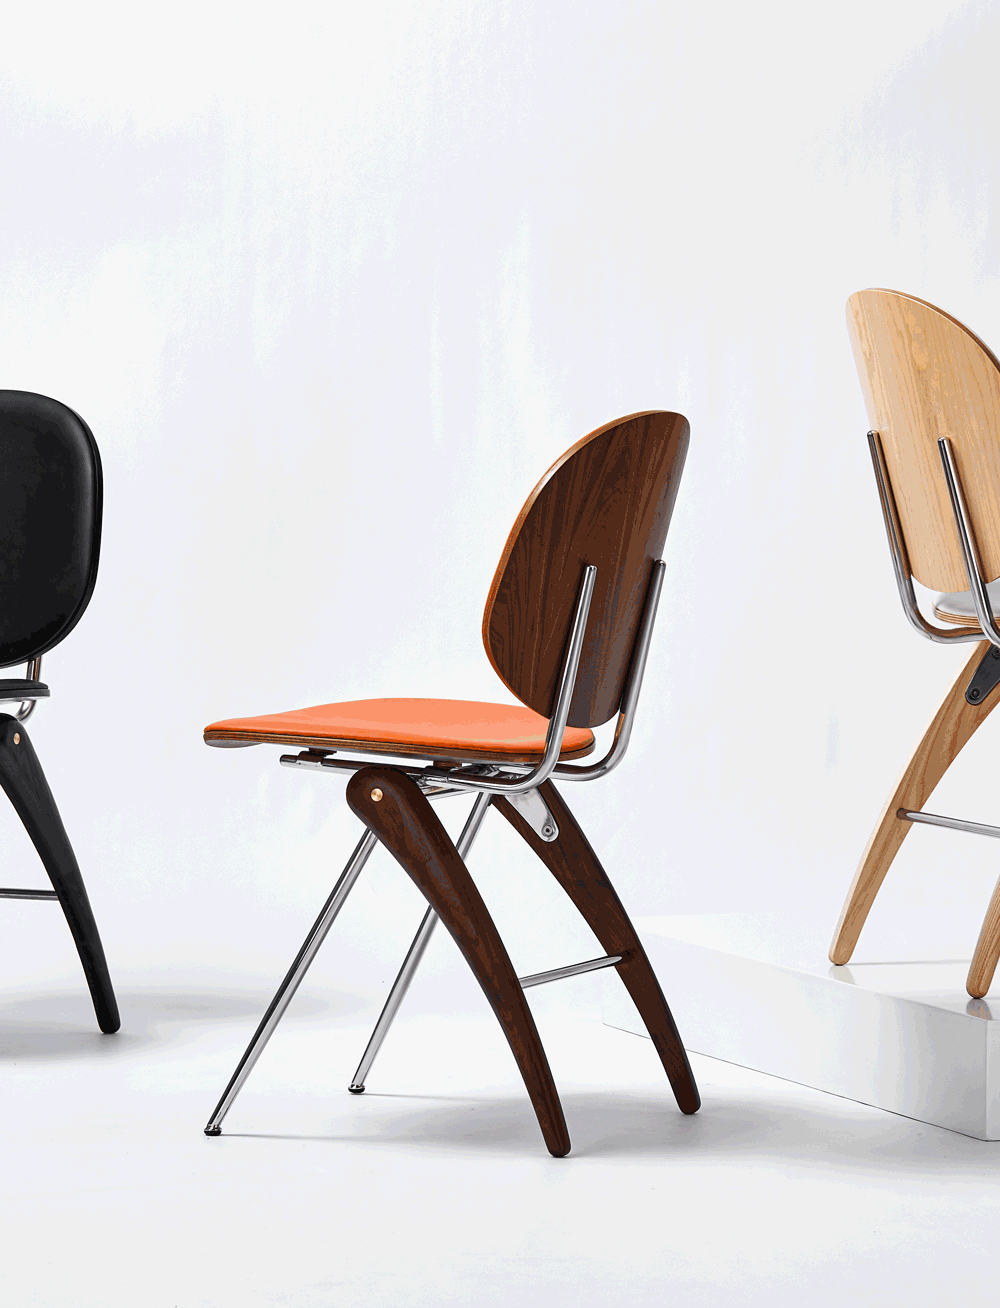 Kingfisher chair1